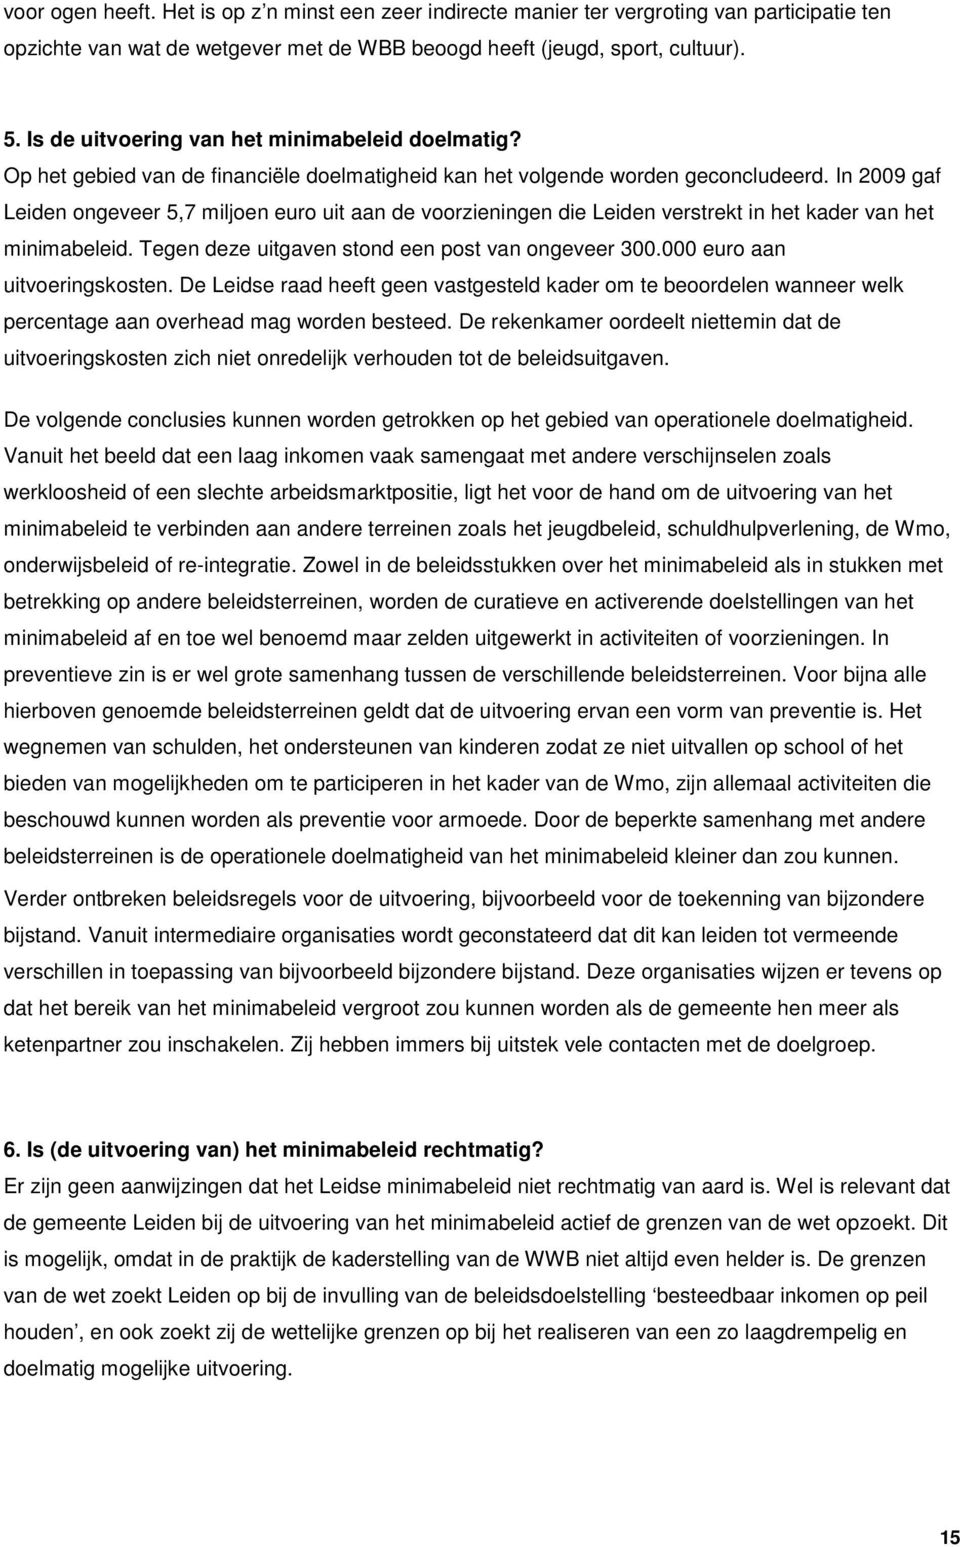 In 2009 gaf Leiden ongeveer 5,7 miljoen euro uit aan de voorzieningen die Leiden verstrekt in het kader van het minimabeleid. Tegen deze uitgaven stond een post van ongeveer 300.